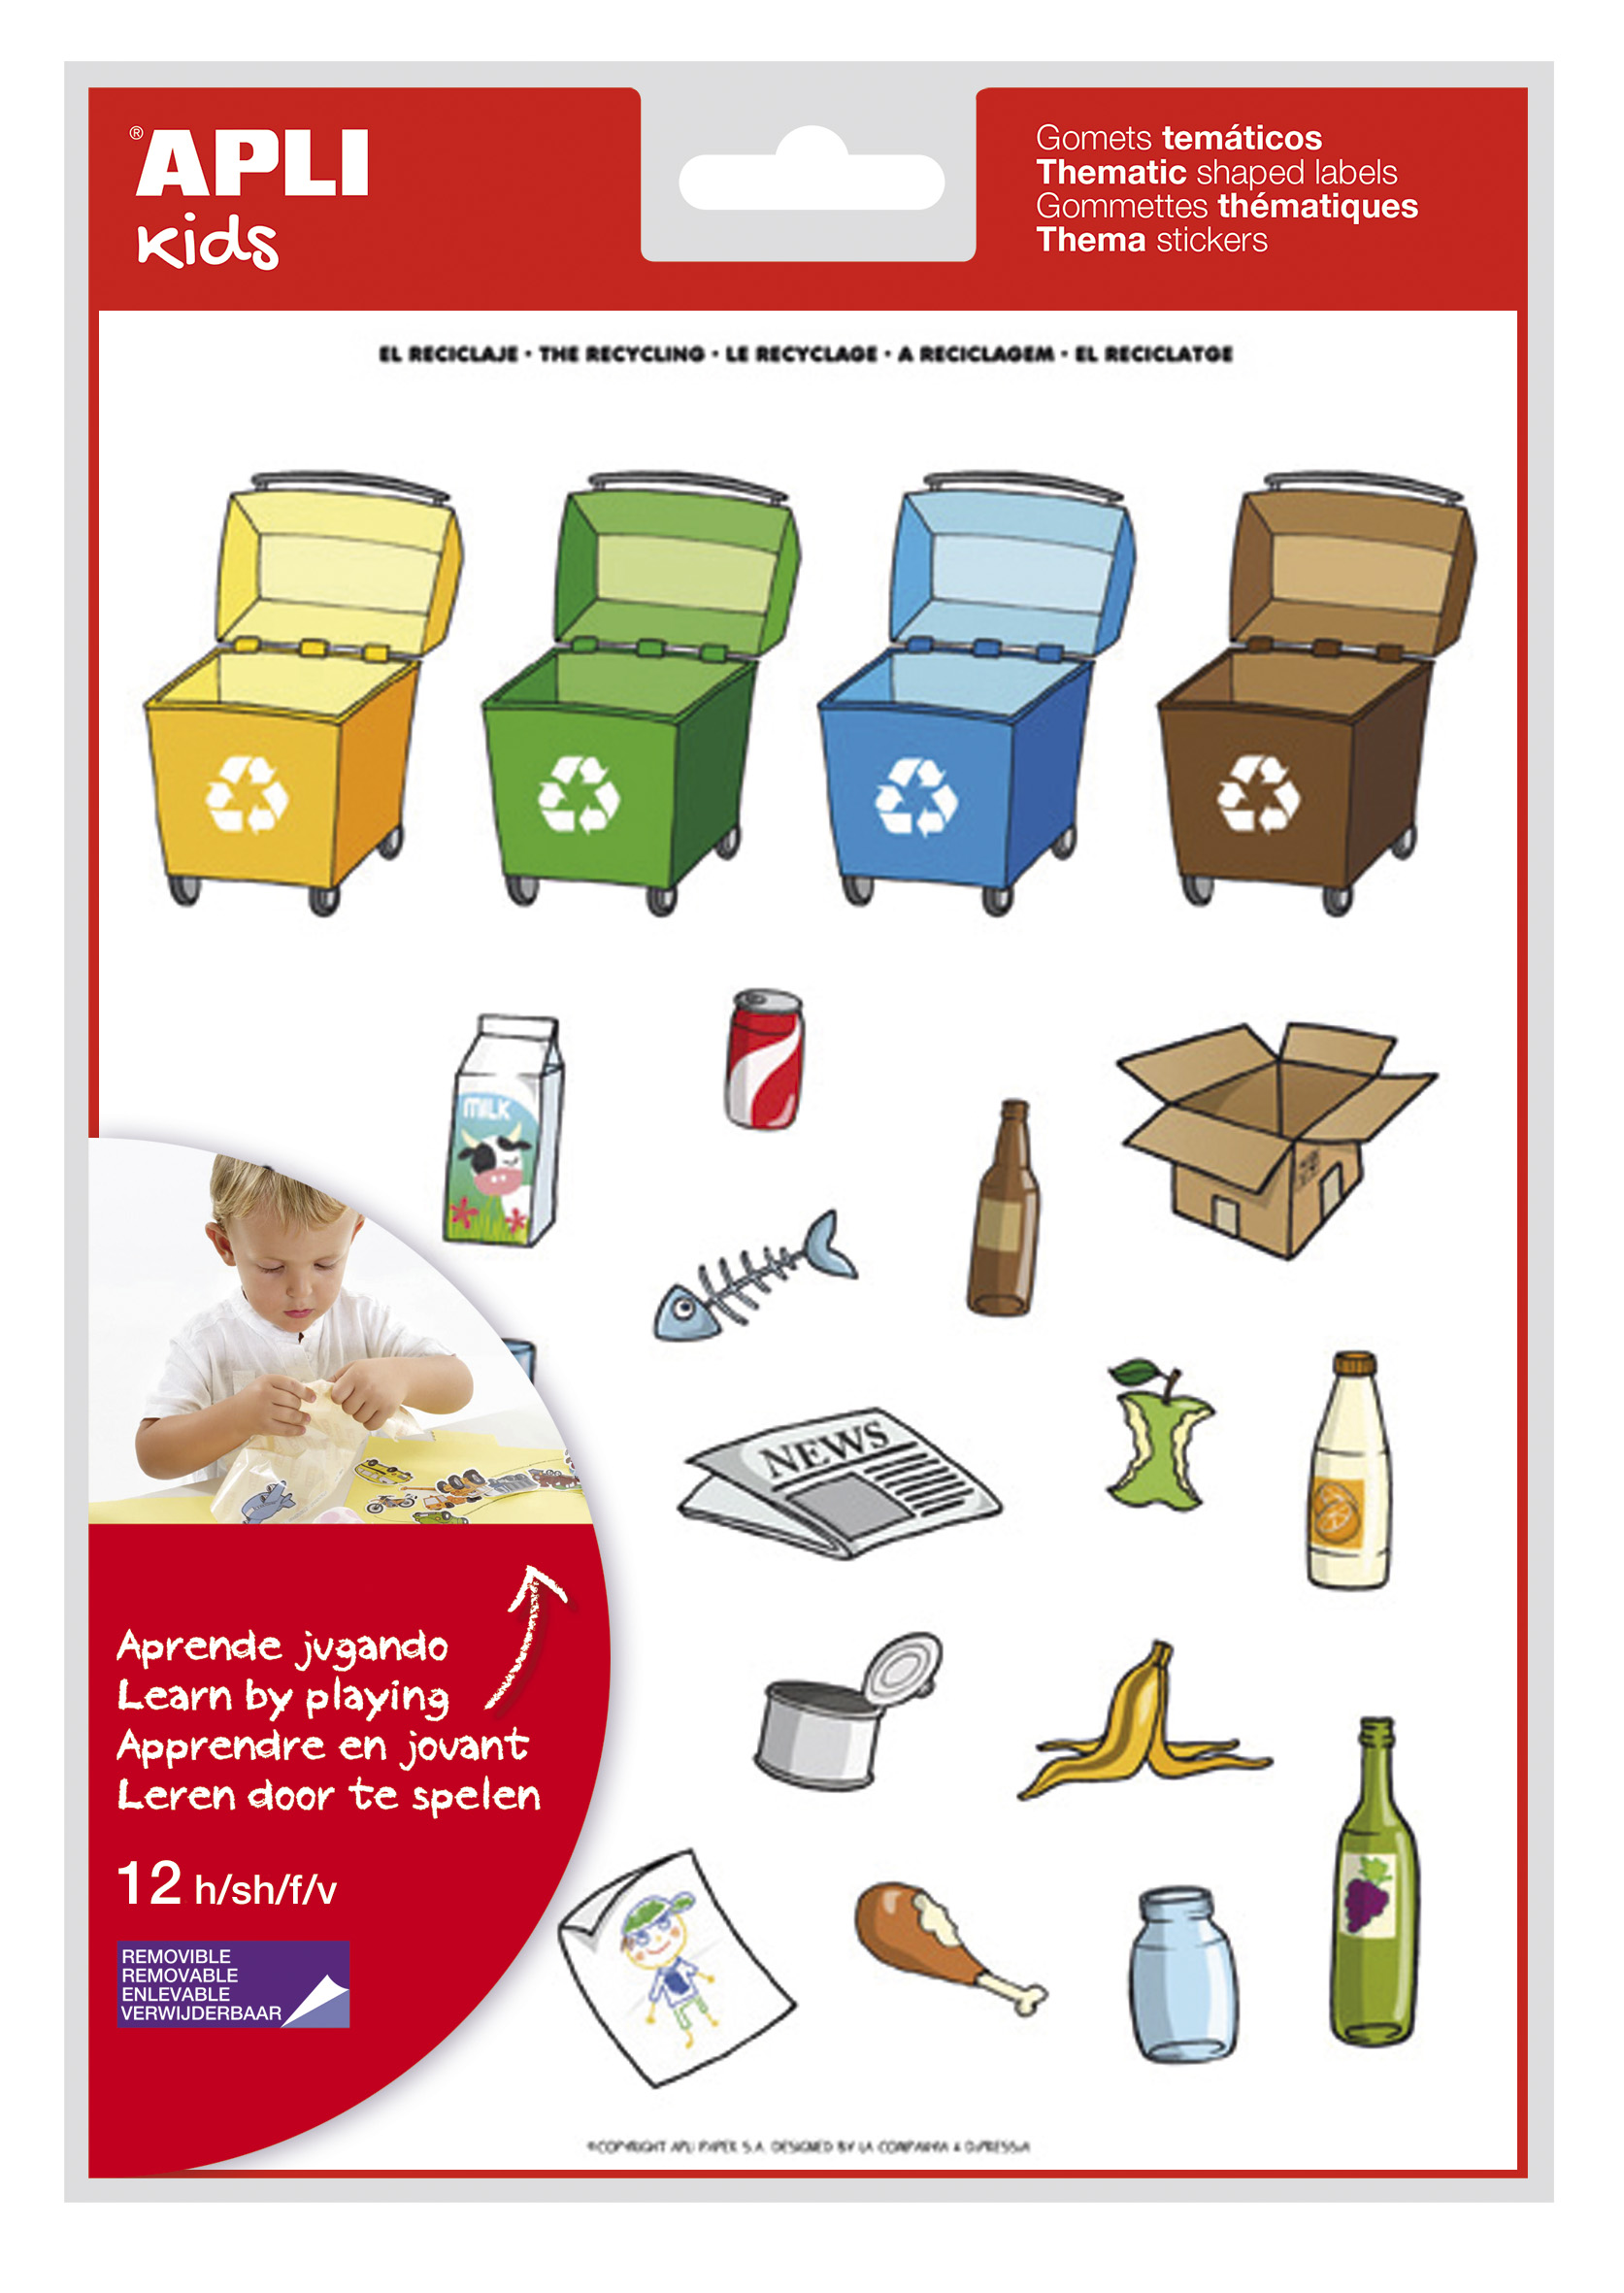 LOT de 5 Autocollants thématiques Apli Recycling - 276 autocollants - Adhésif amovible - Illustrations amusantes - Idéal pour les écoles - Normes EN-71 et FSC - Adhésif à base d'eau - ECF - 100% recyclable - Coloré